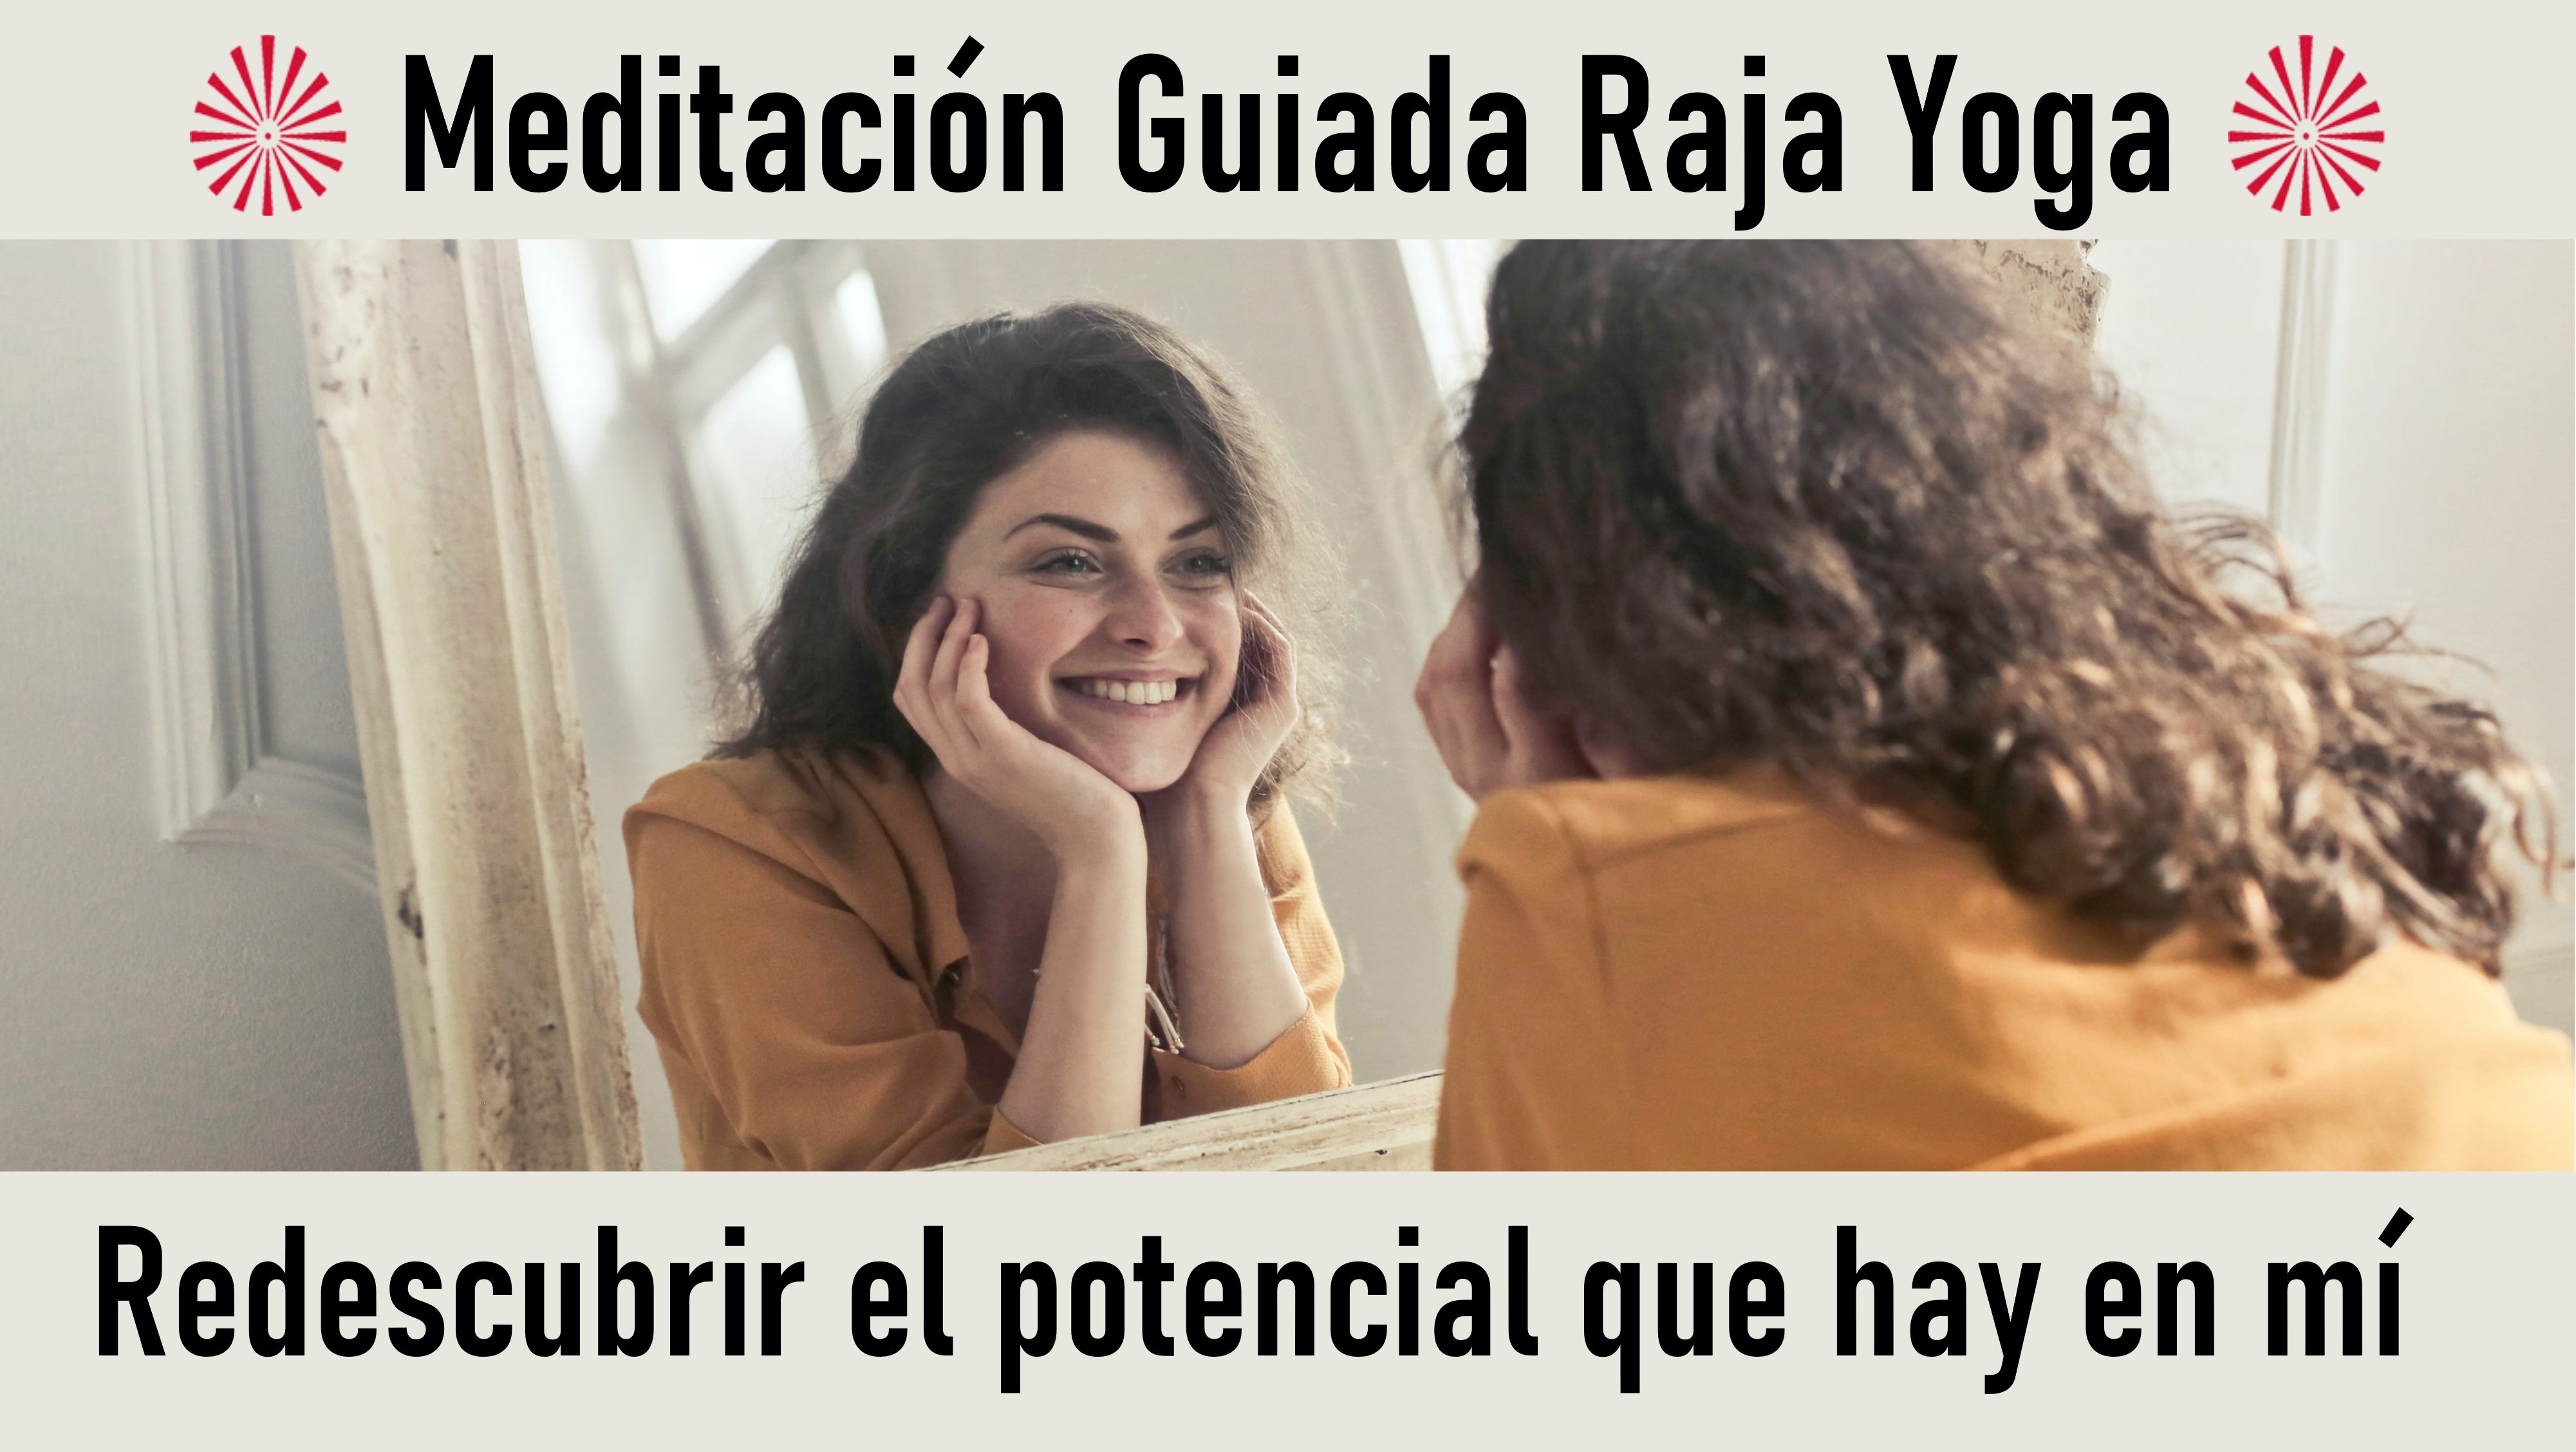 Meditación Raja Yoga: Redescubrir el potencial que hay en mí (1 Octubre 2020) On-line desde Barcelona